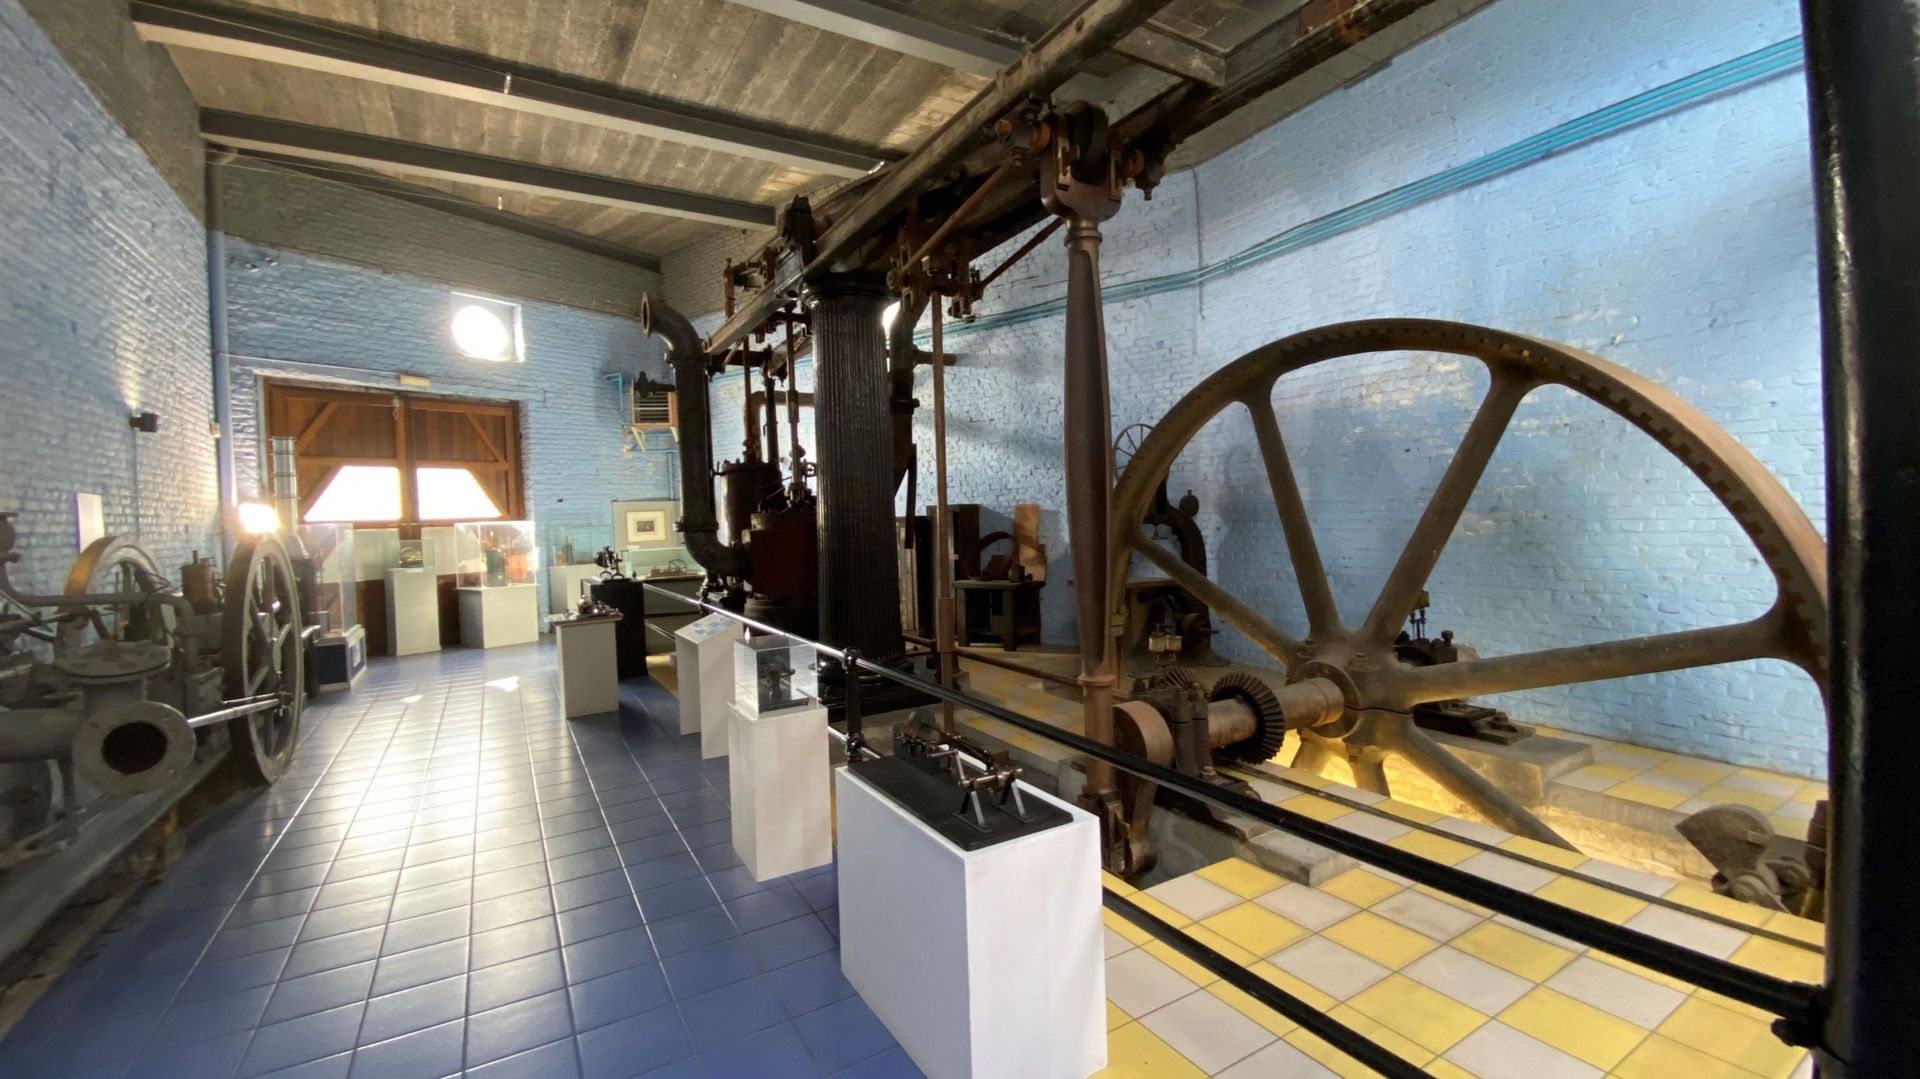 l’idée c’est de dépoussiérer le musée et de de mettre en valeur certaines pièces remarquables comme cette machine à vapeur du 19e siècle…